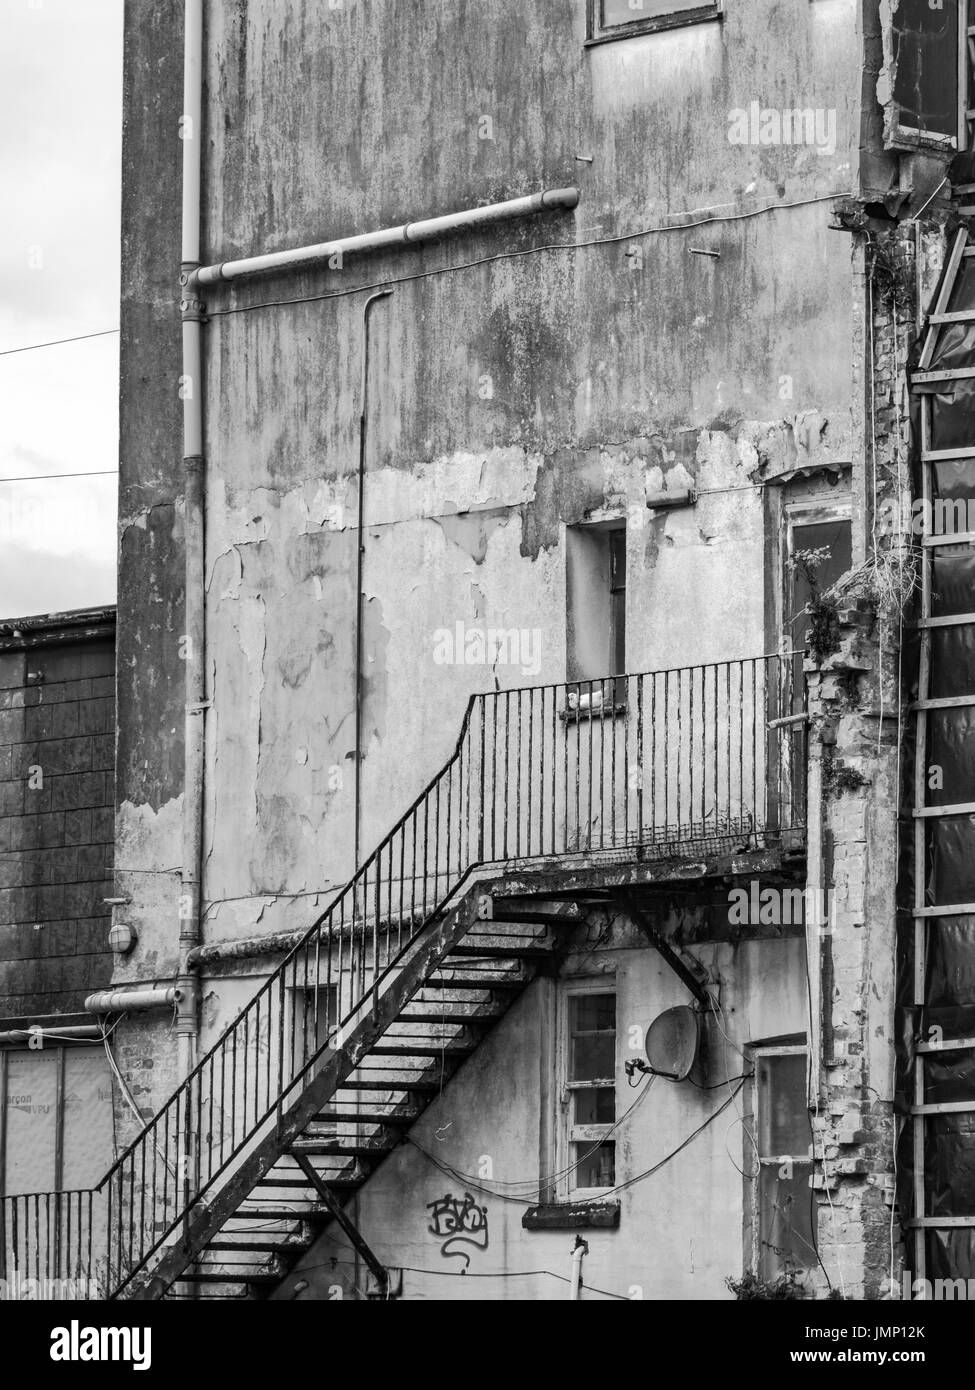 Immagine in bianco e nero di un'estremità di una proprietà a Newquay, Cornovaglia, piuttosto frantumata. Scalinata verso il nulla.[la proprietà è stata demolita, non esiste più.] Foto Stock